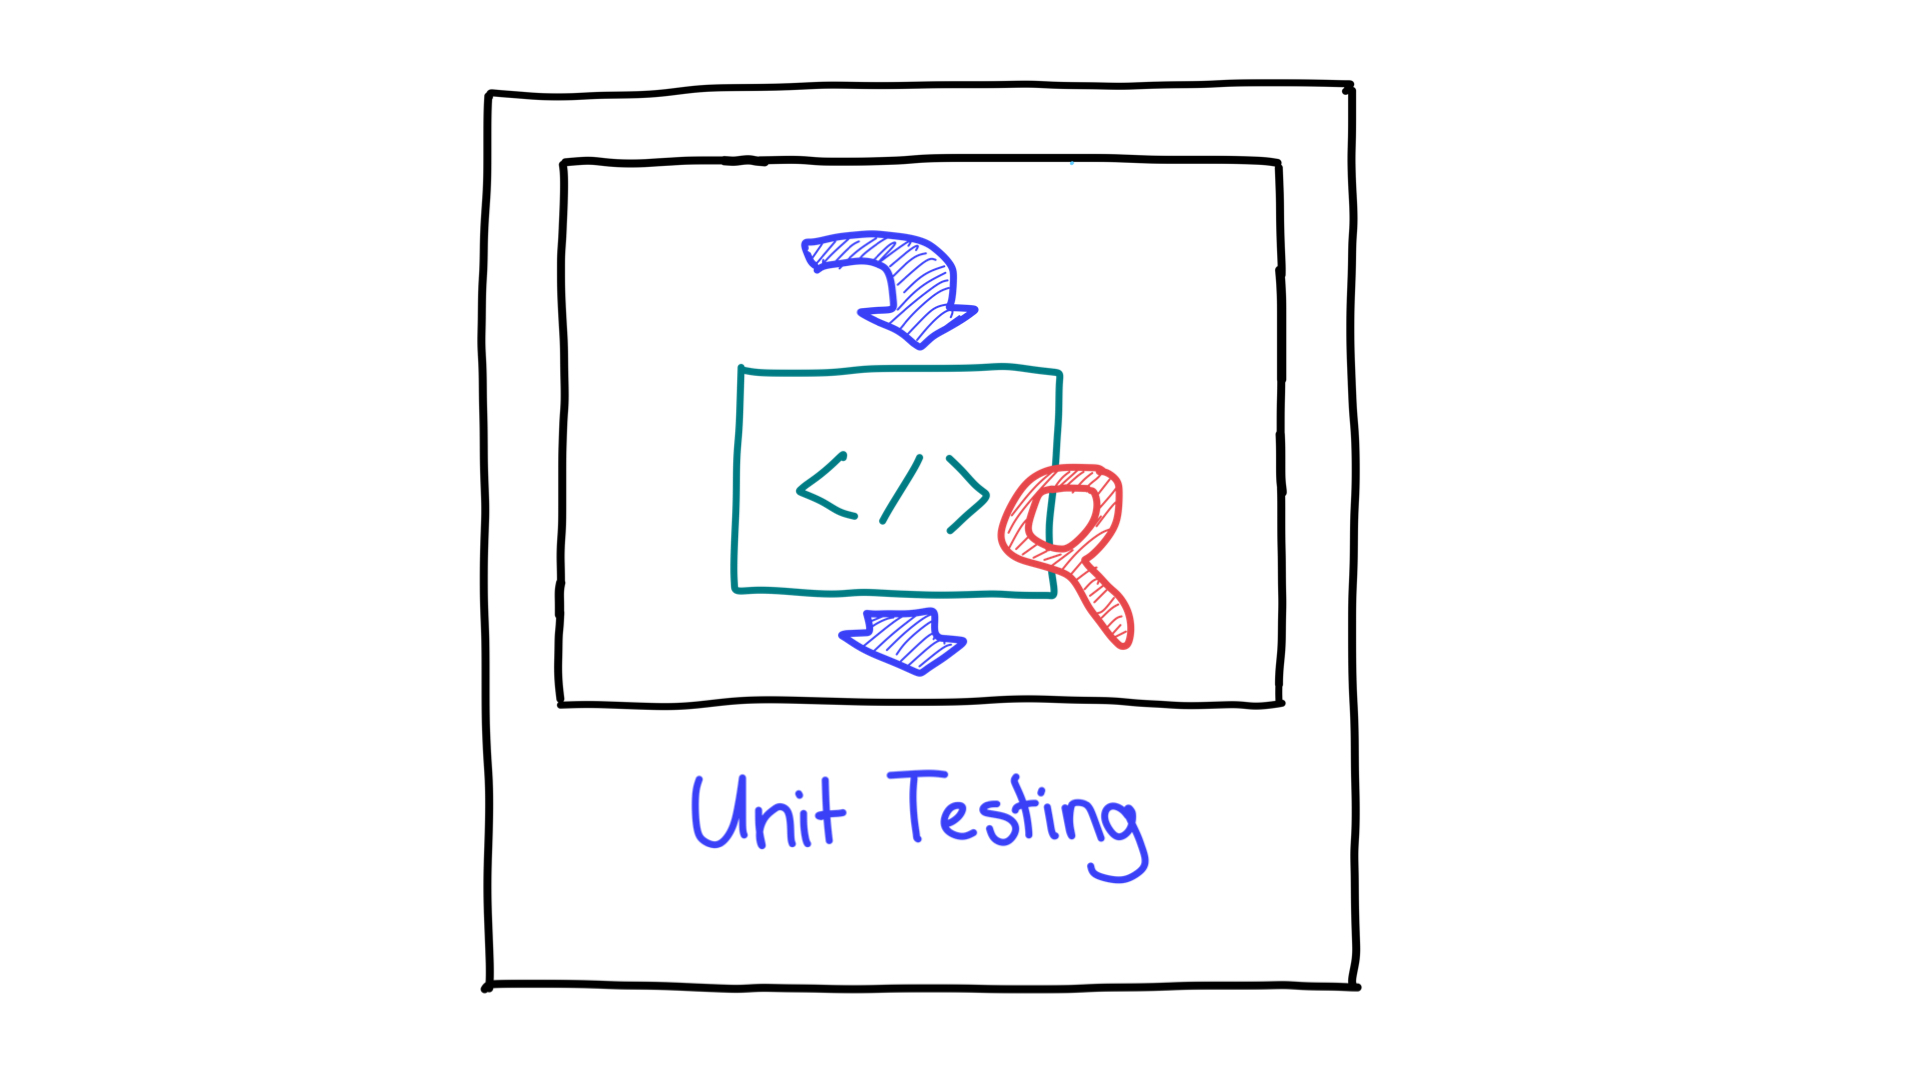 यूनिट टेस्टिंग को आसान तरीके से, इनपुट और आउटपुट के तौर पर दिखाया गया है.